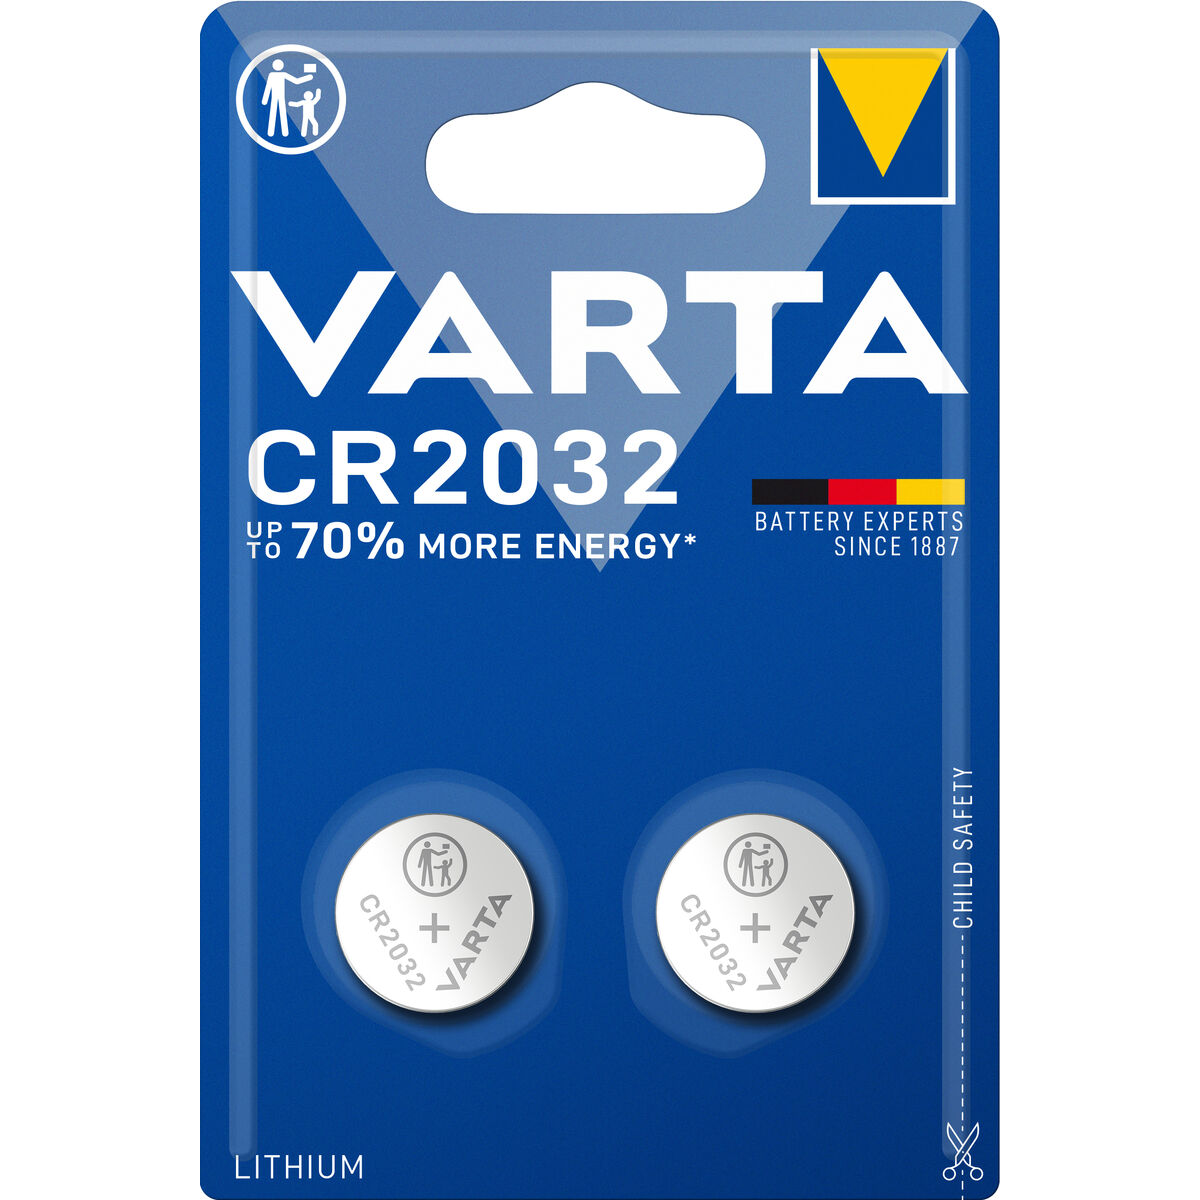 Batteries Varta CR 2032 3 V